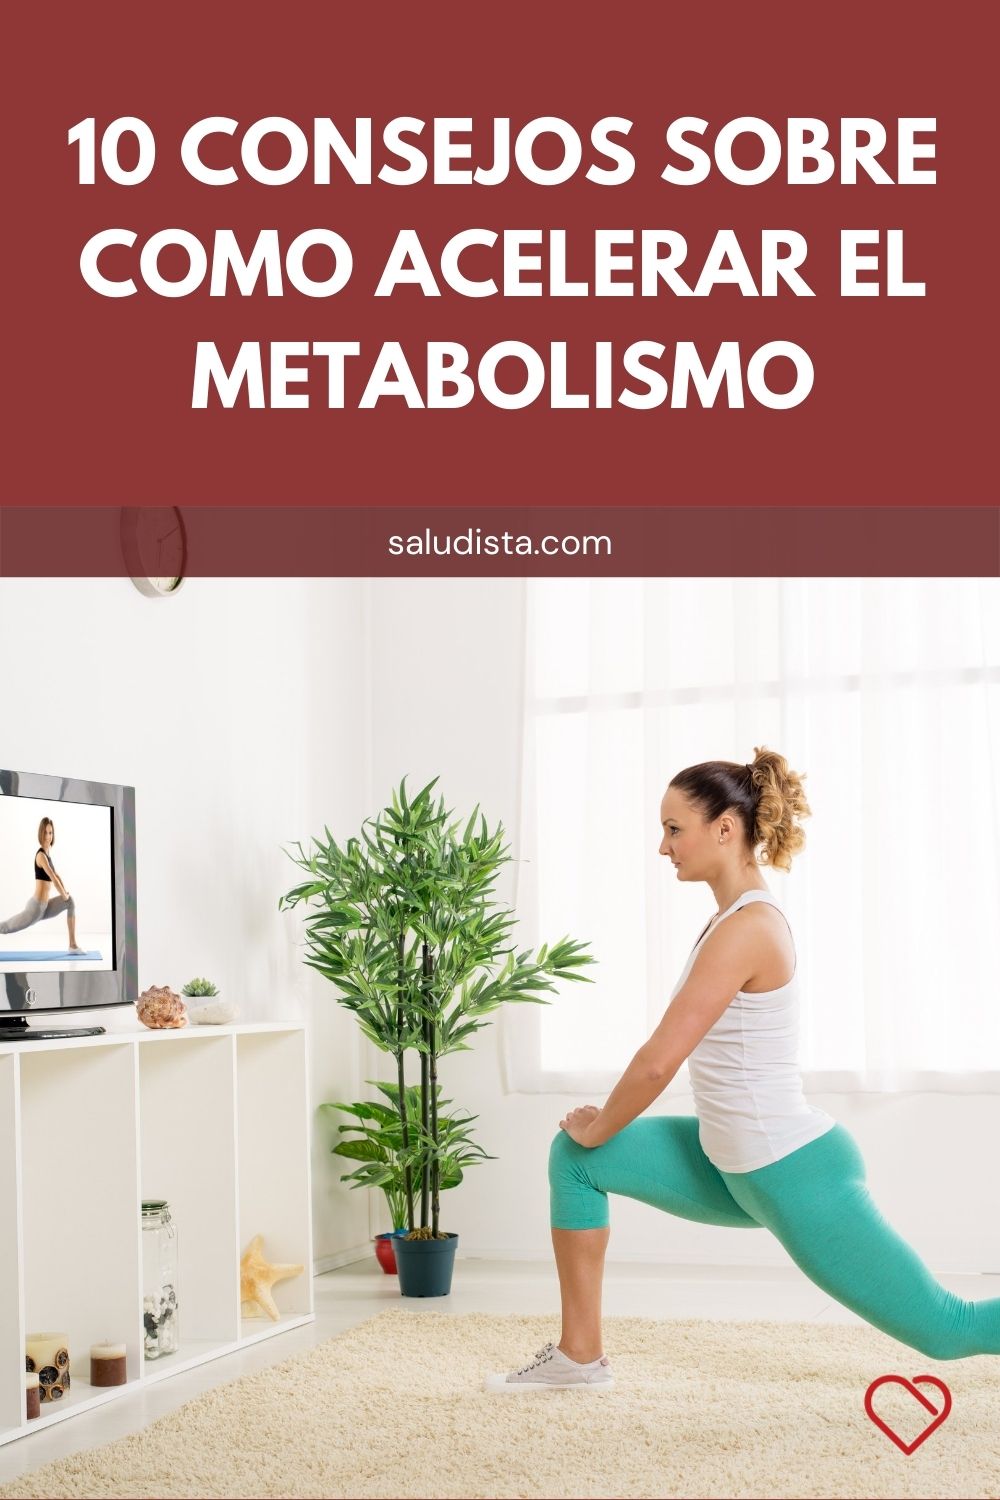 10 Consejos sobre como acelerar el metabolismo